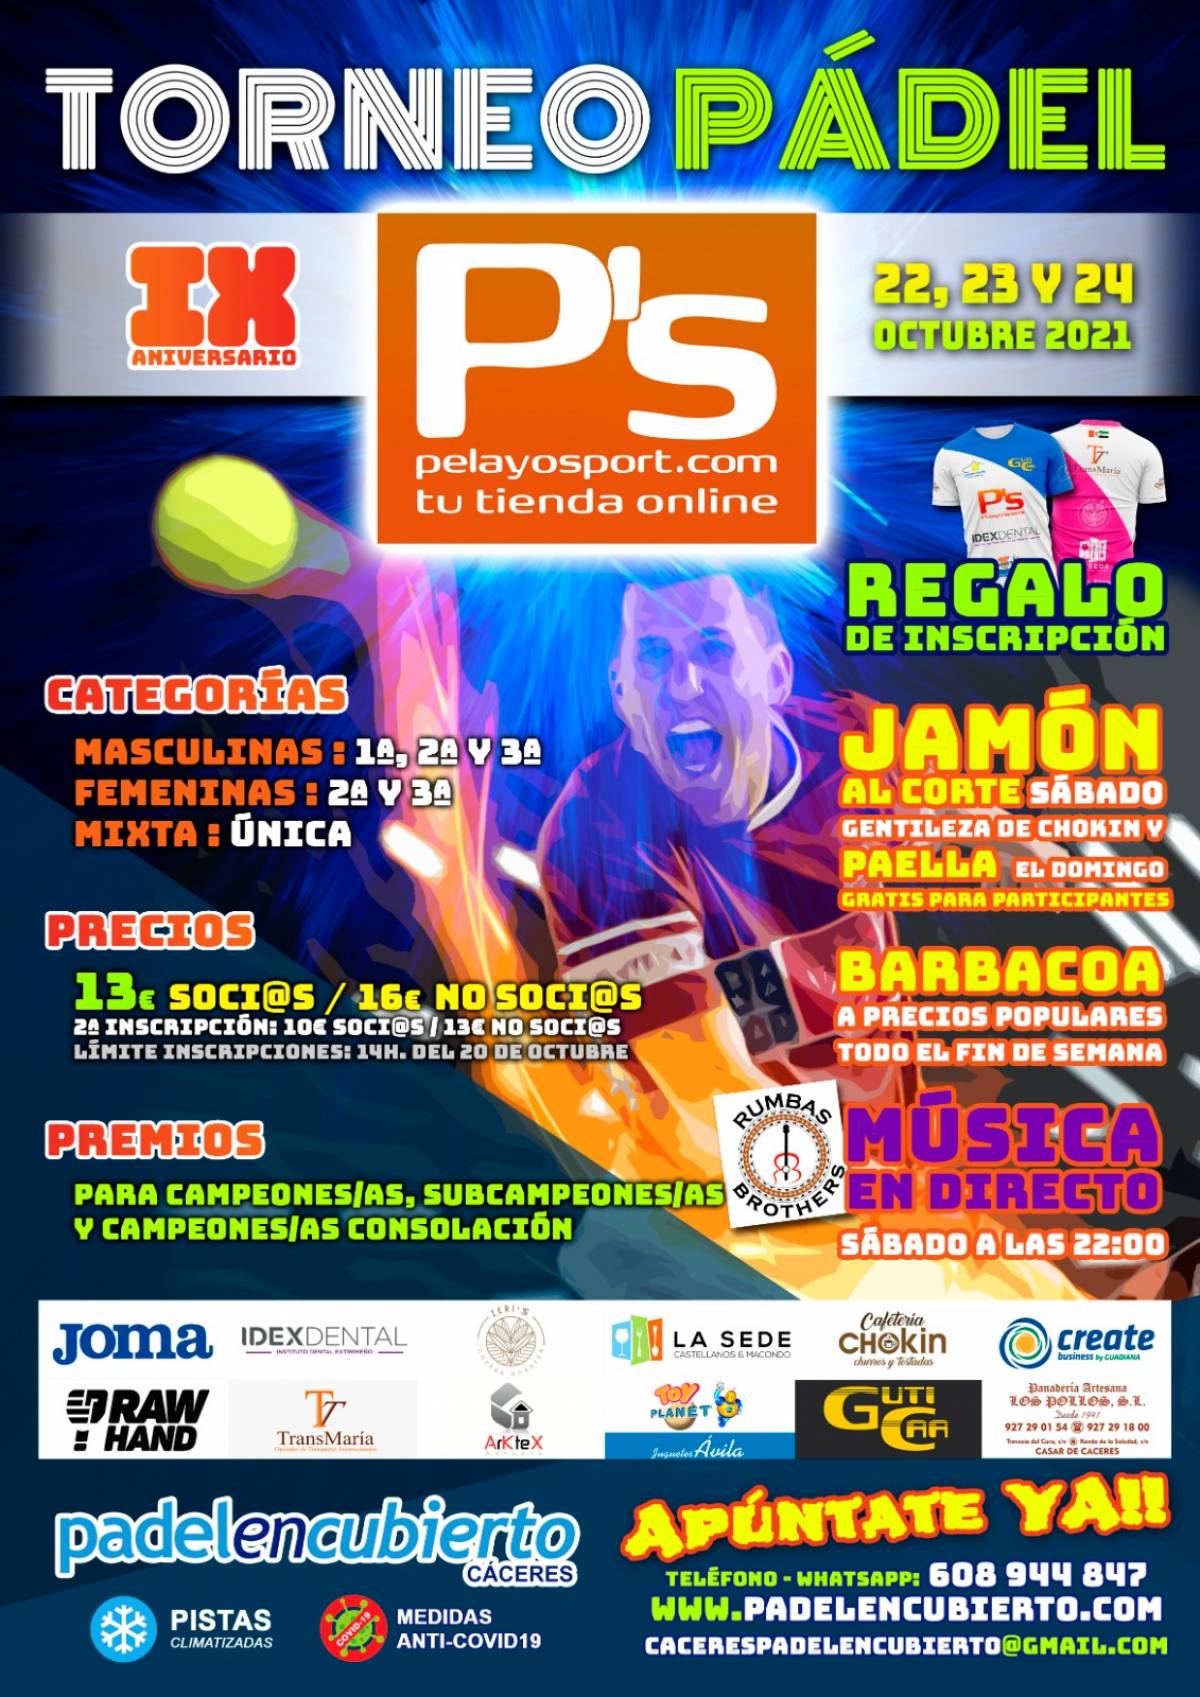 Torneo 9º Aniversario Padelencubierto Caceres - Pelayos’Port (22-23 y 24/10)